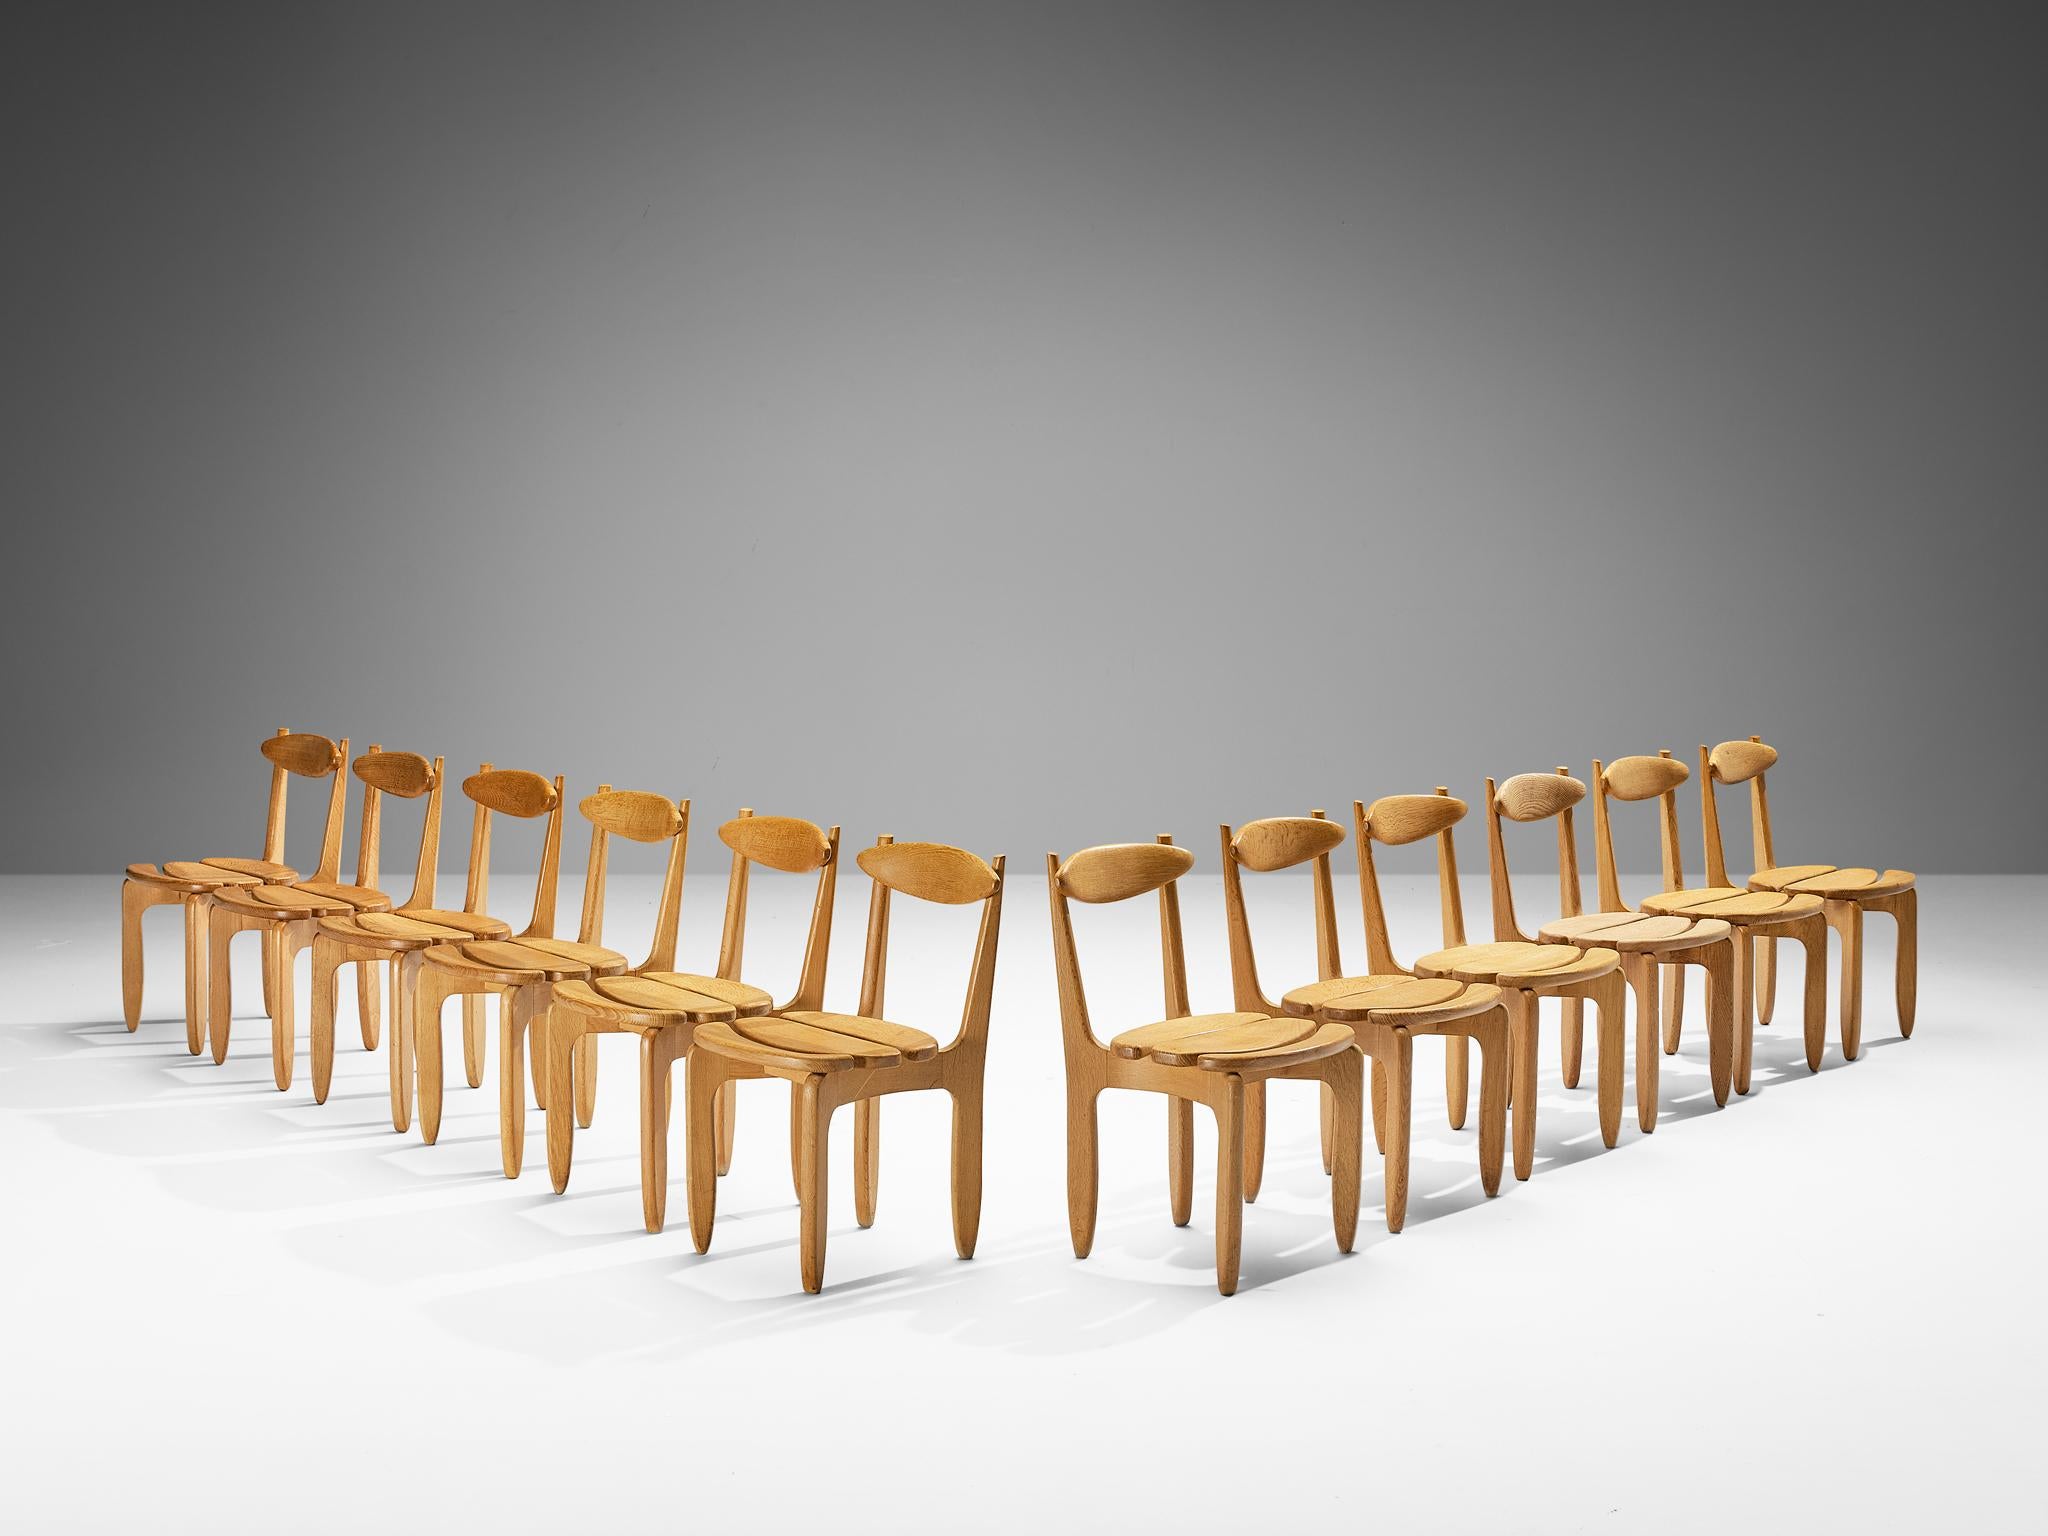 Guillerme et Chambron für Votre Maison, Satz von zwölf Esszimmerstühlen, Eiche, Frankreich, 1960er Jahre.

Zwölf elegante und robuste Esszimmerstühle aus massiver Eiche von Guillerme und Chambron. Diese Stühle zeigen den charakteristischen Rahmen